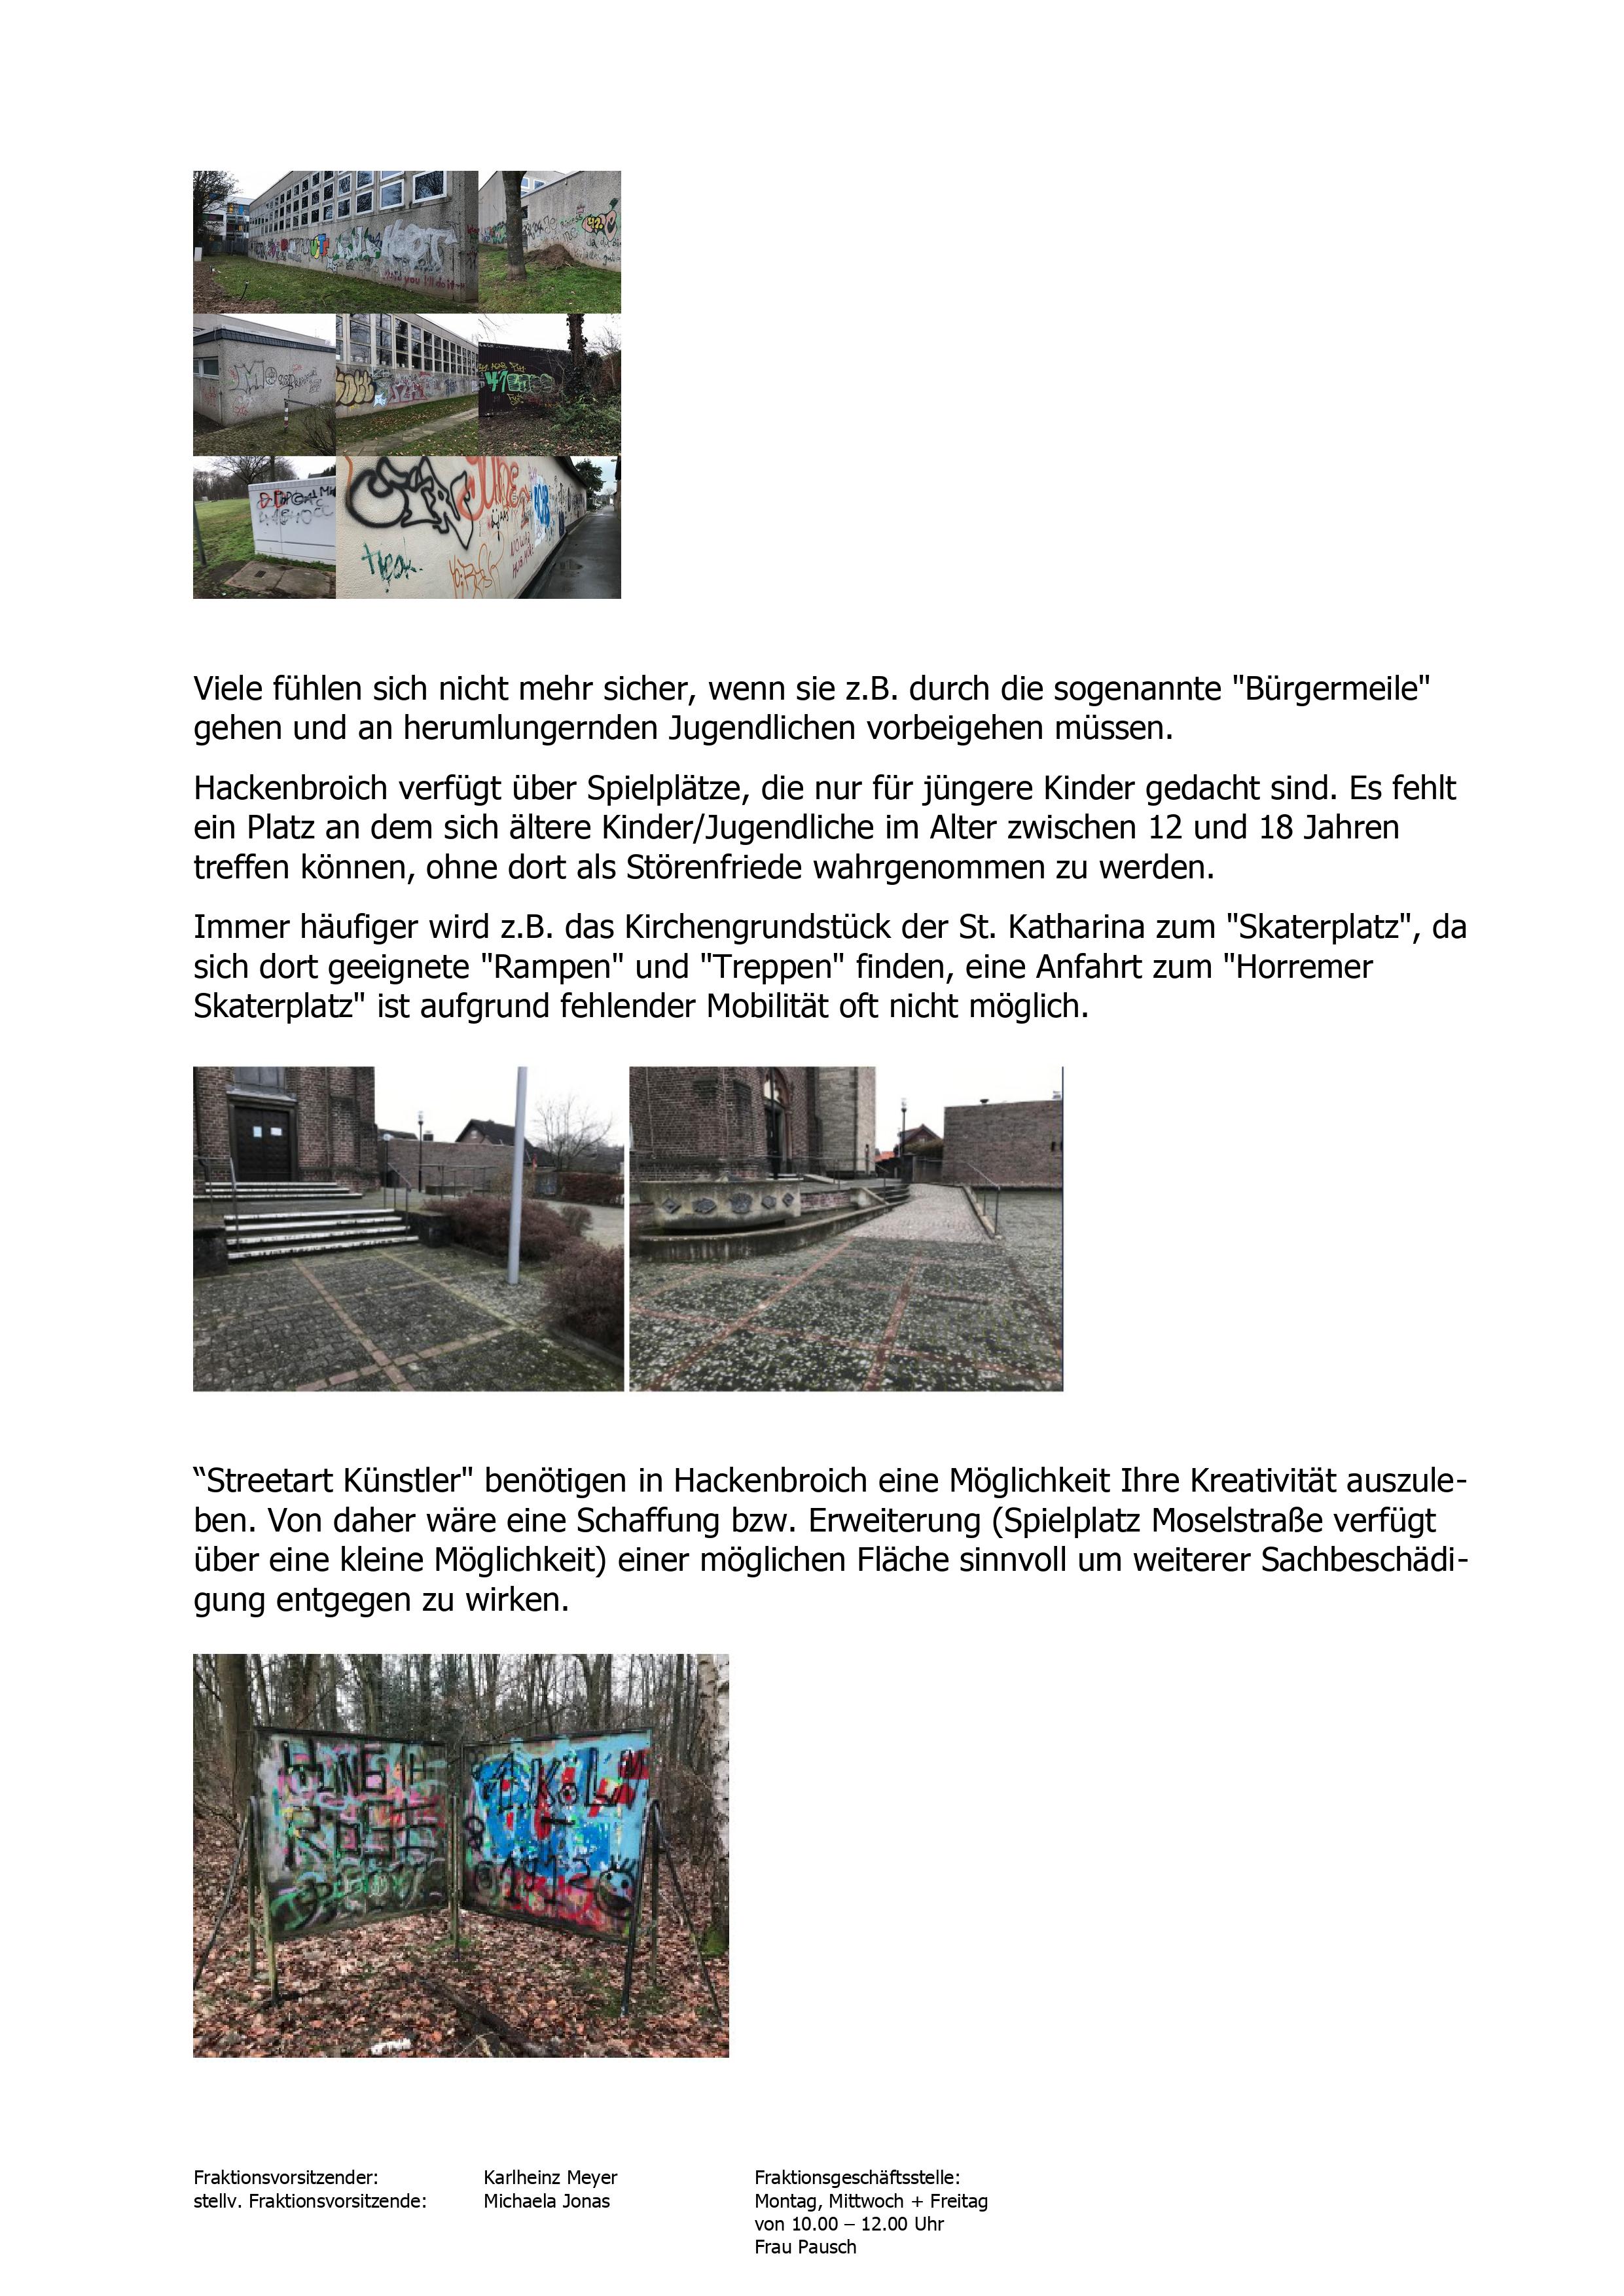 Erweiterung/Neugestaltung oder Reaktivierung eines Spielplatzes zu einem Jugendpark mit Skaterplatz und Calisthenics-Angebot in Hackenbroich